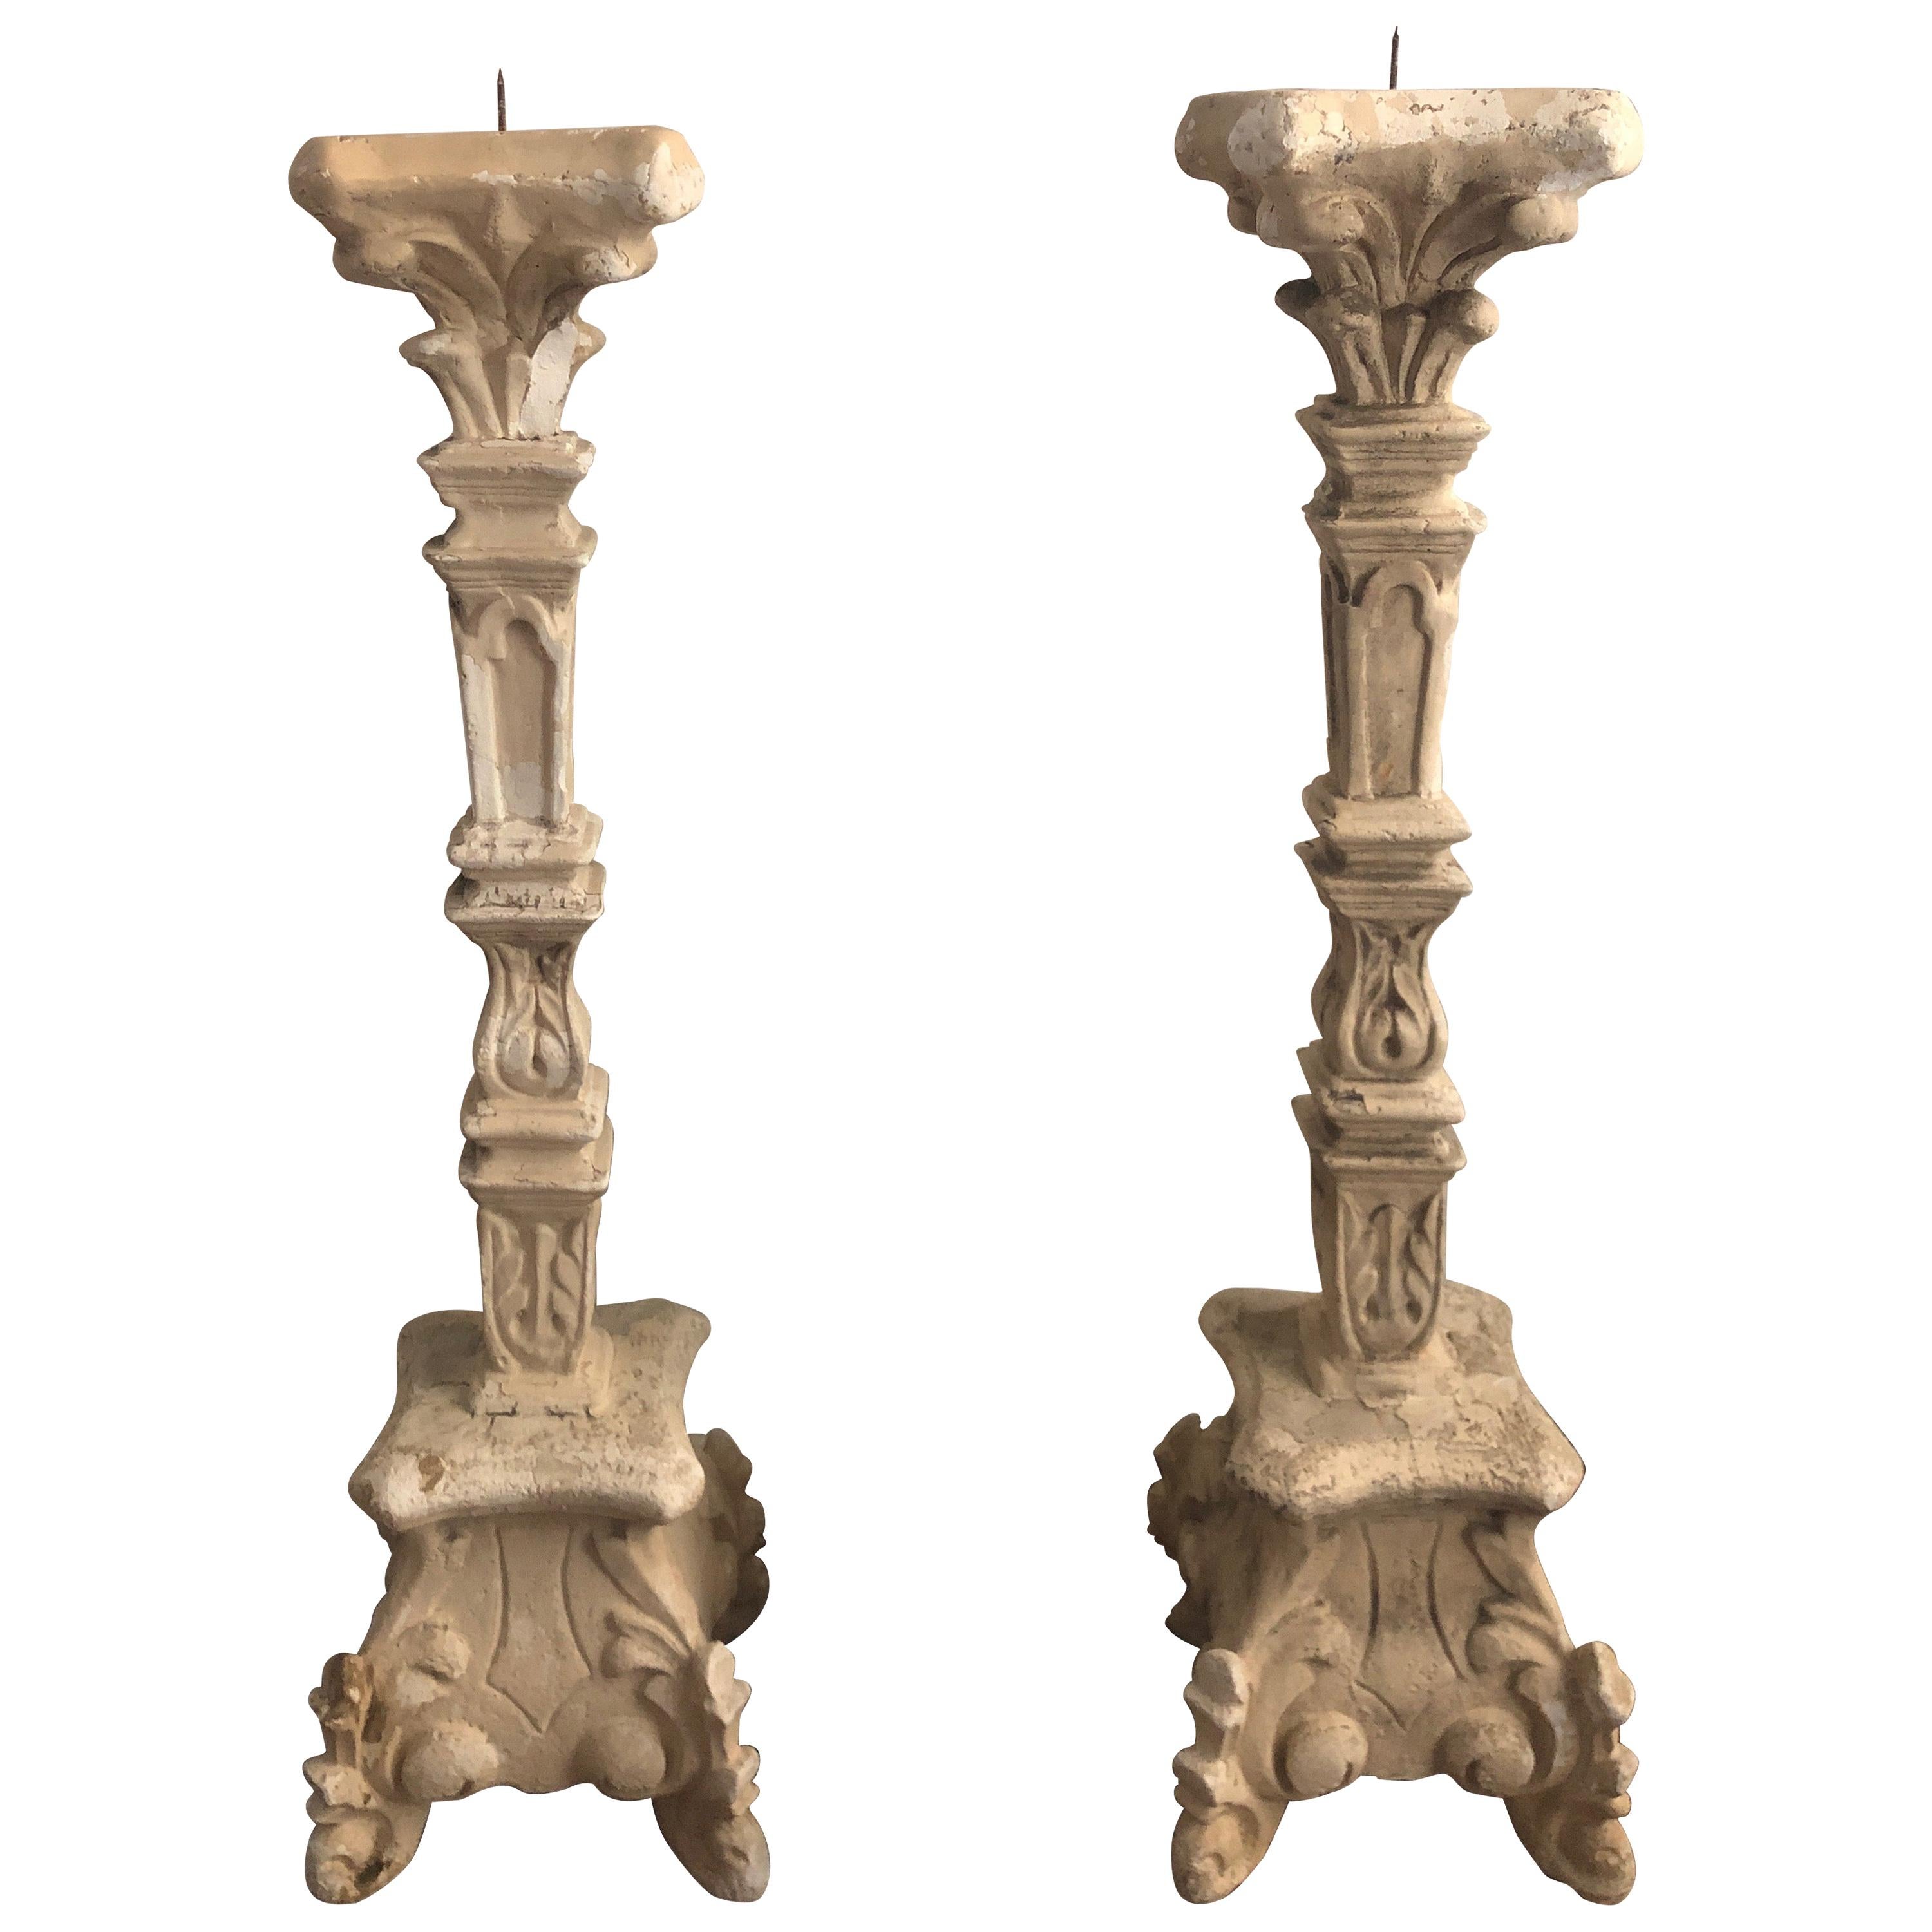 Paire de grands chandeliers italiens à pilier de style rococo français